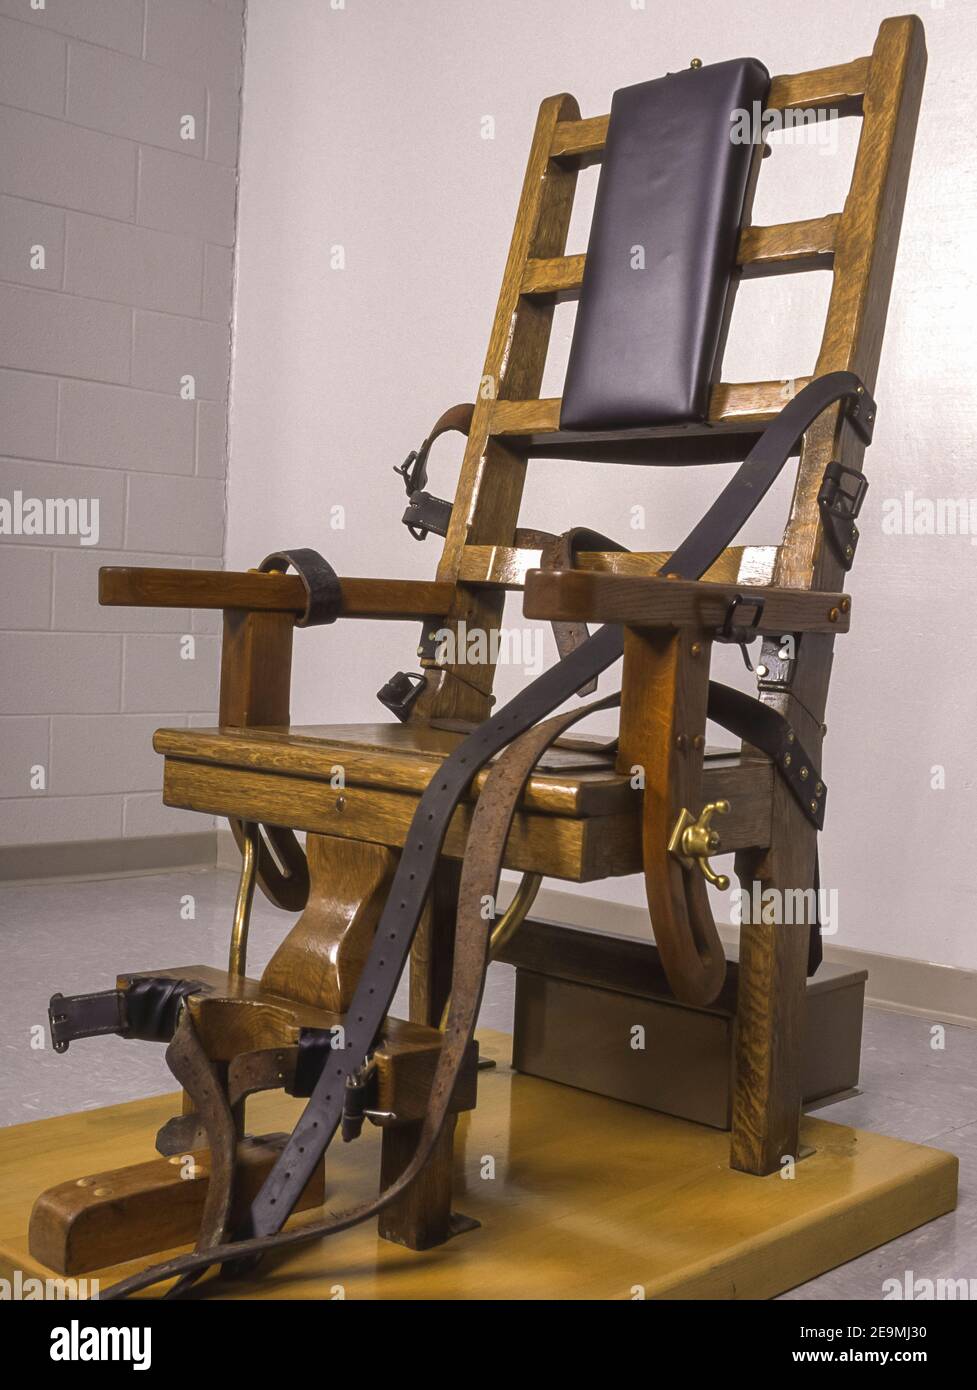 JARRATT, VIRGINIE, États-Unis - chaise électrique pour la peine de mort au  Centre correctionnel de Greensville, pour la peine capitale Photo Stock -  Alamy